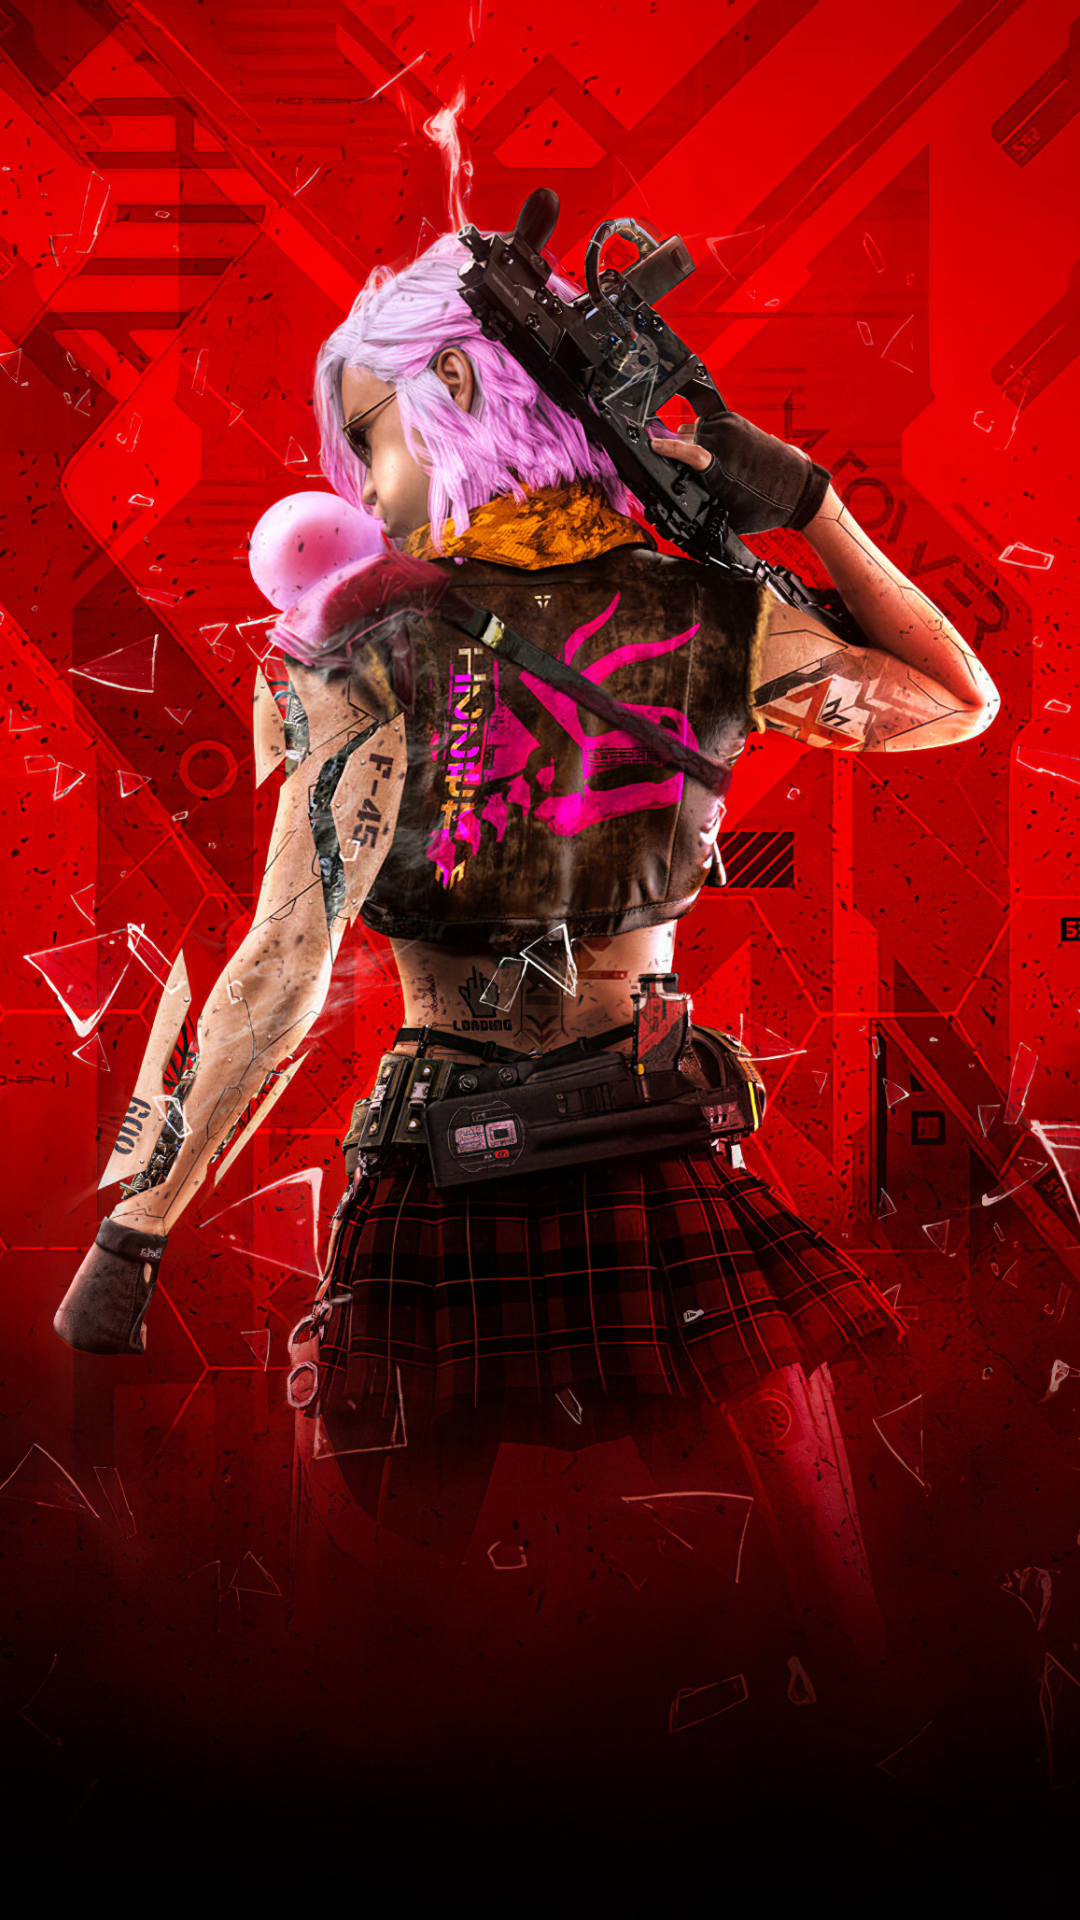 Download cyberpunk girl, video game, art 1080x1920 wallpaper, 1080p